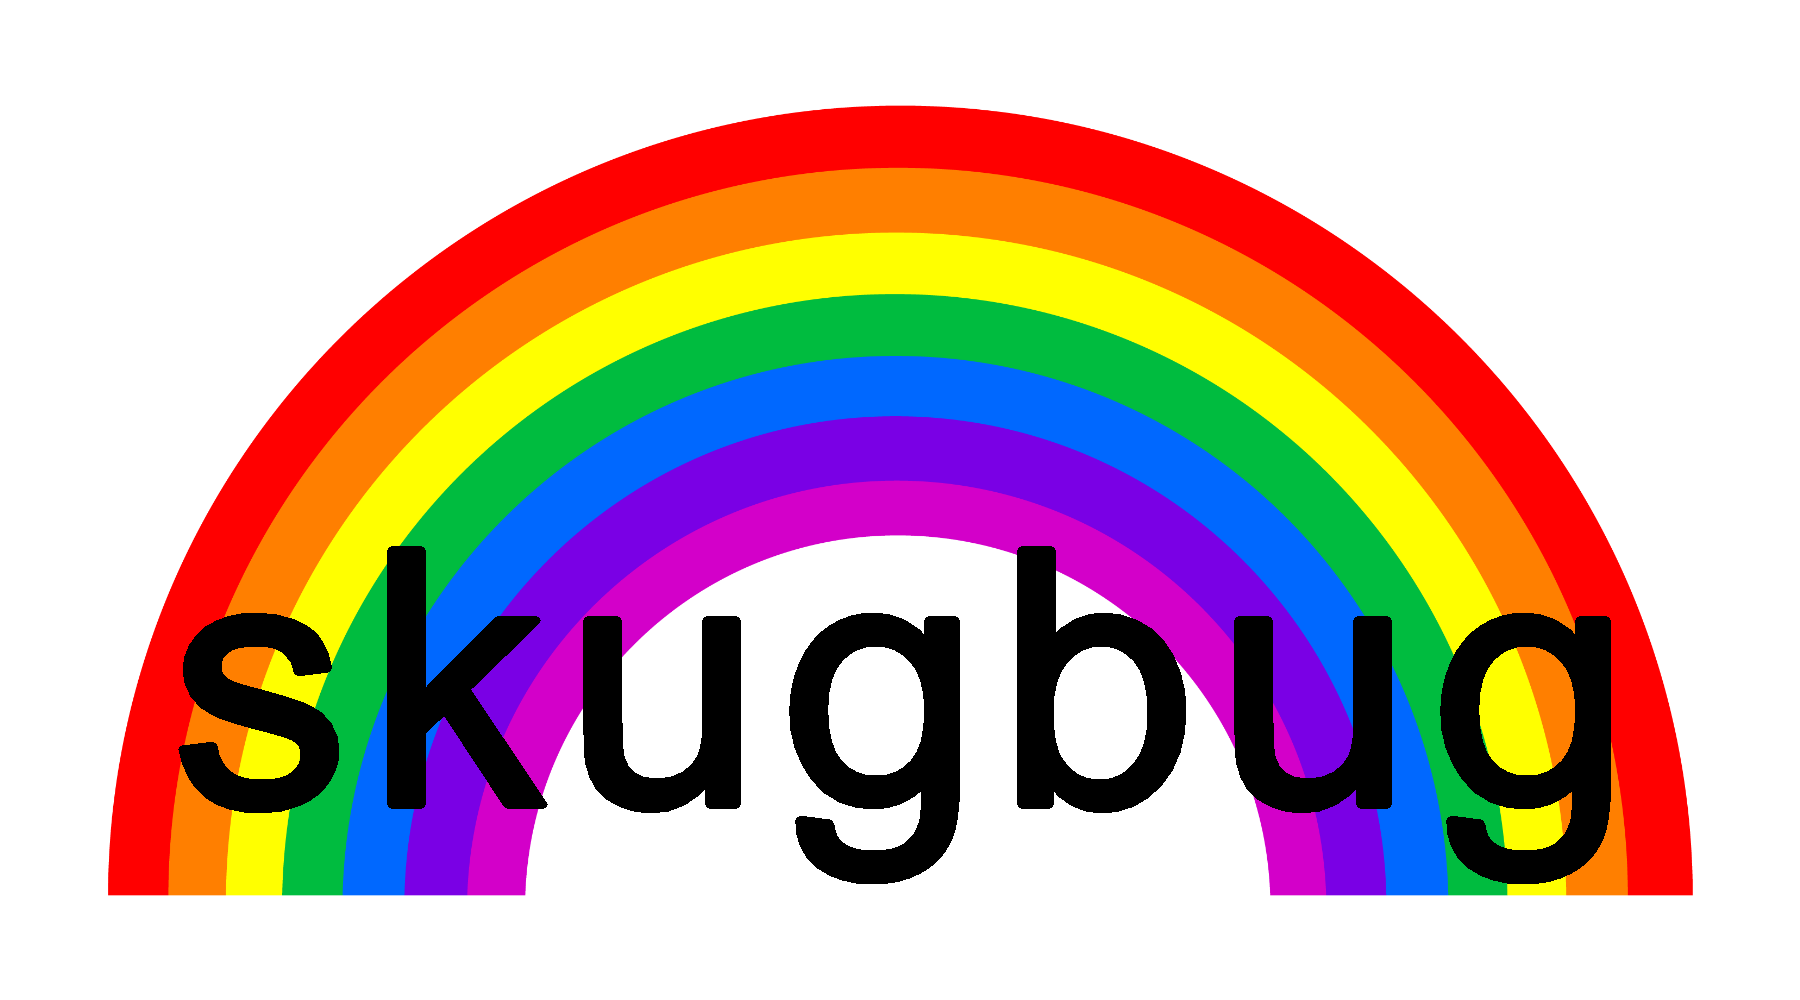 skugbug logo